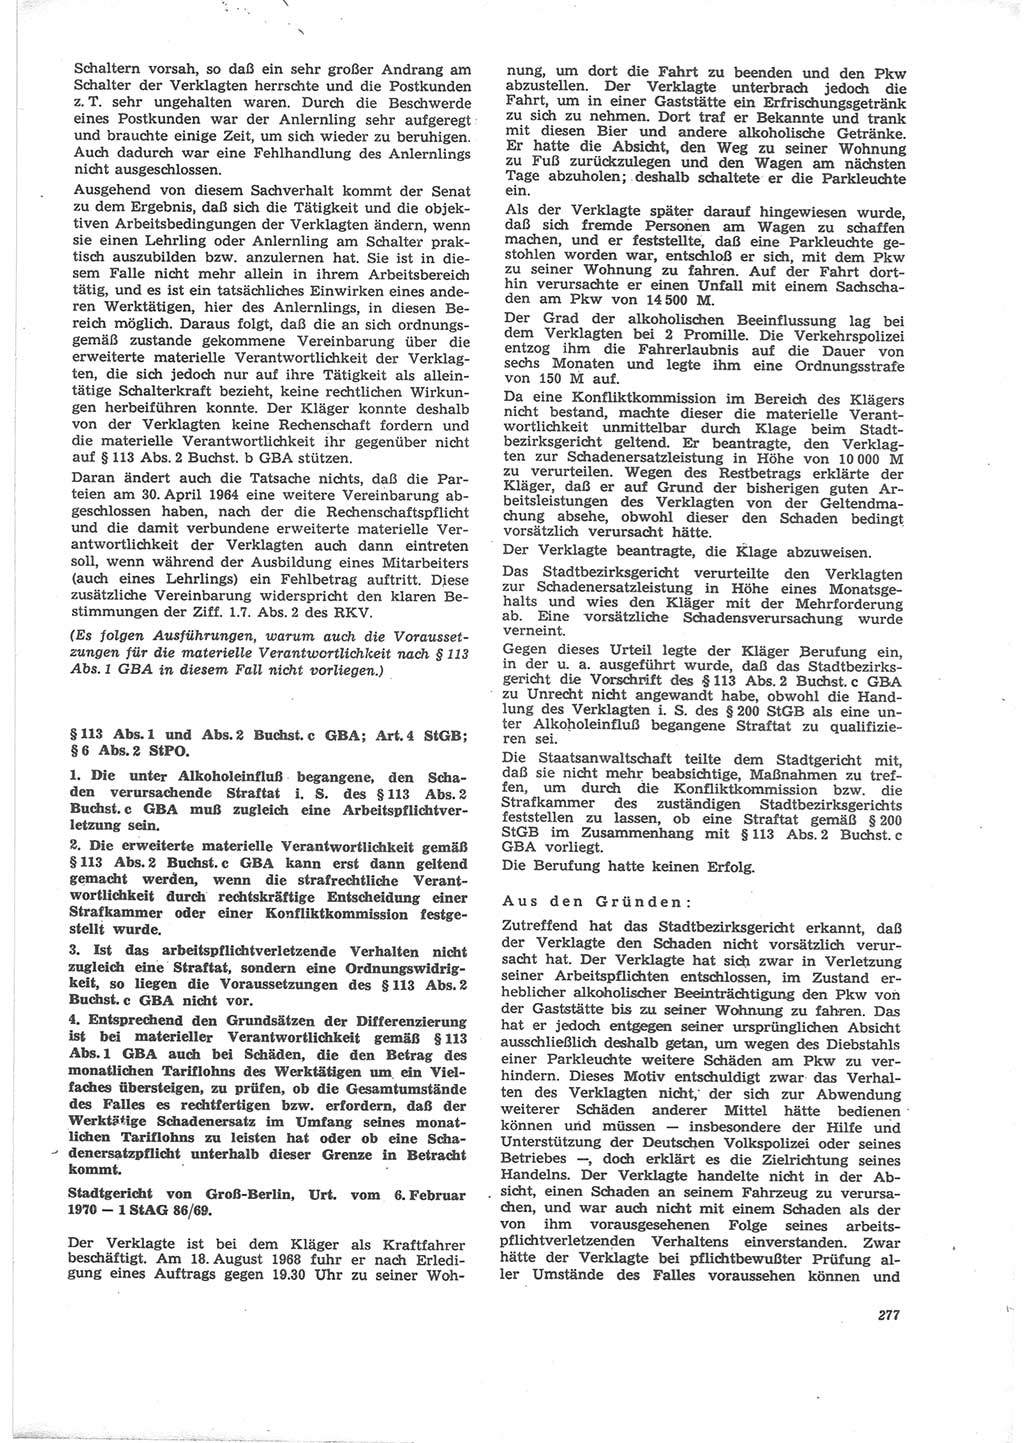 Neue Justiz (NJ), Zeitschrift für Recht und Rechtswissenschaft [Deutsche Demokratische Republik (DDR)], 24. Jahrgang 1970, Seite 277 (NJ DDR 1970, S. 277)